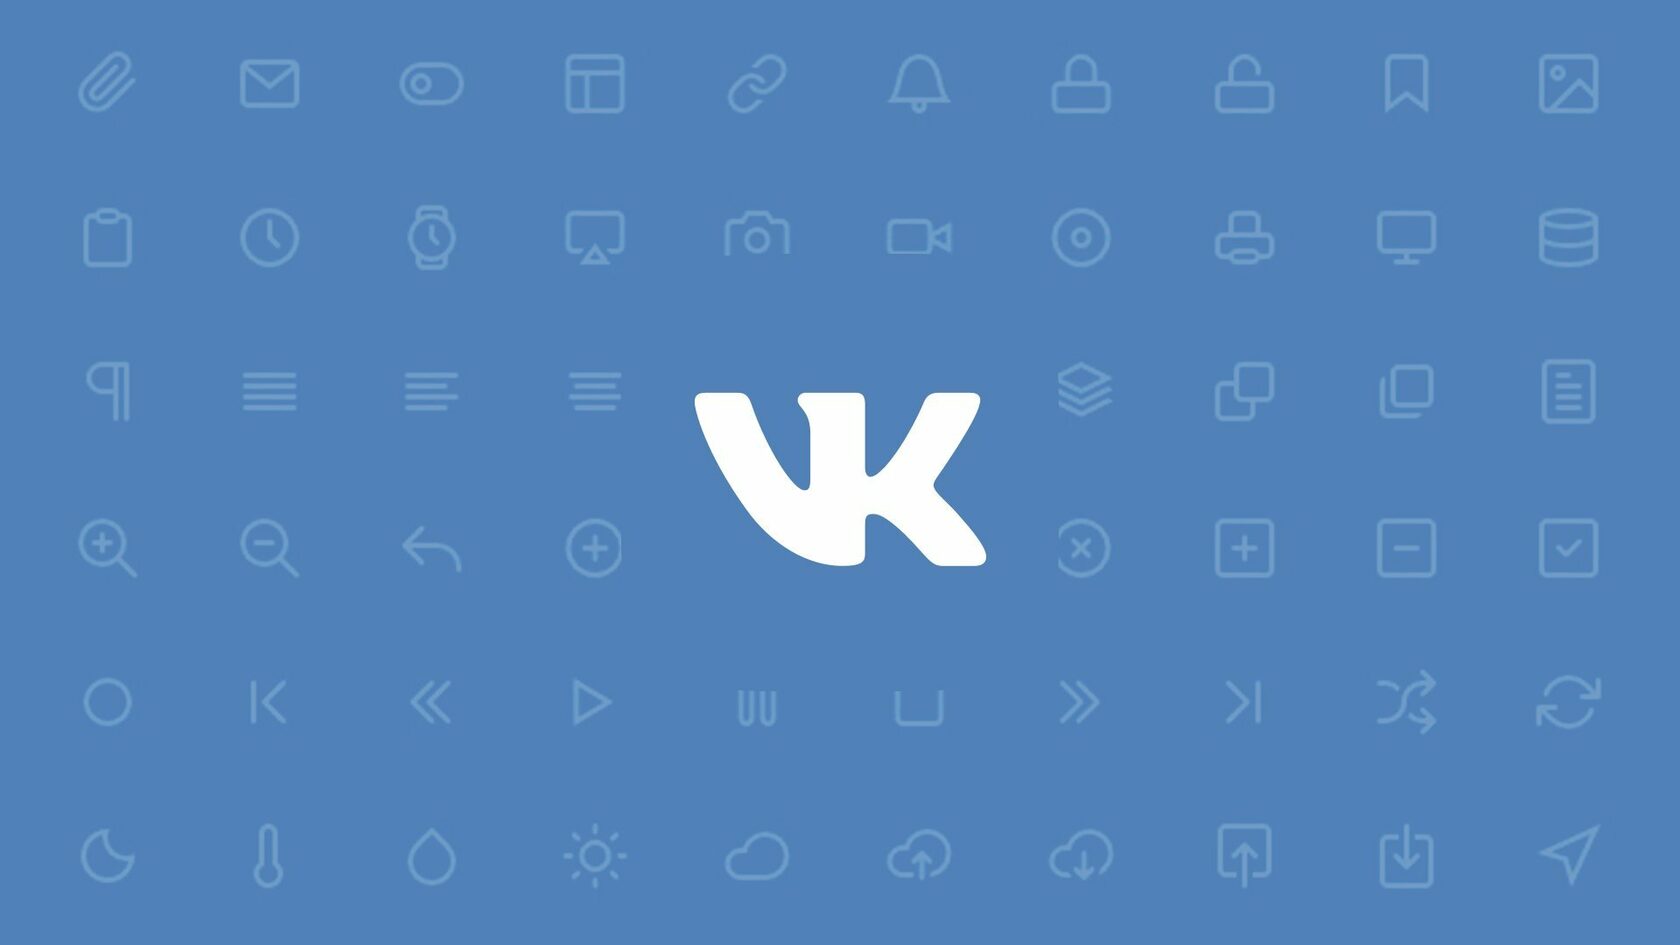 Во ВКонтакте появился доступ к бета-тестированию новых возможностей рекламного кабинета.